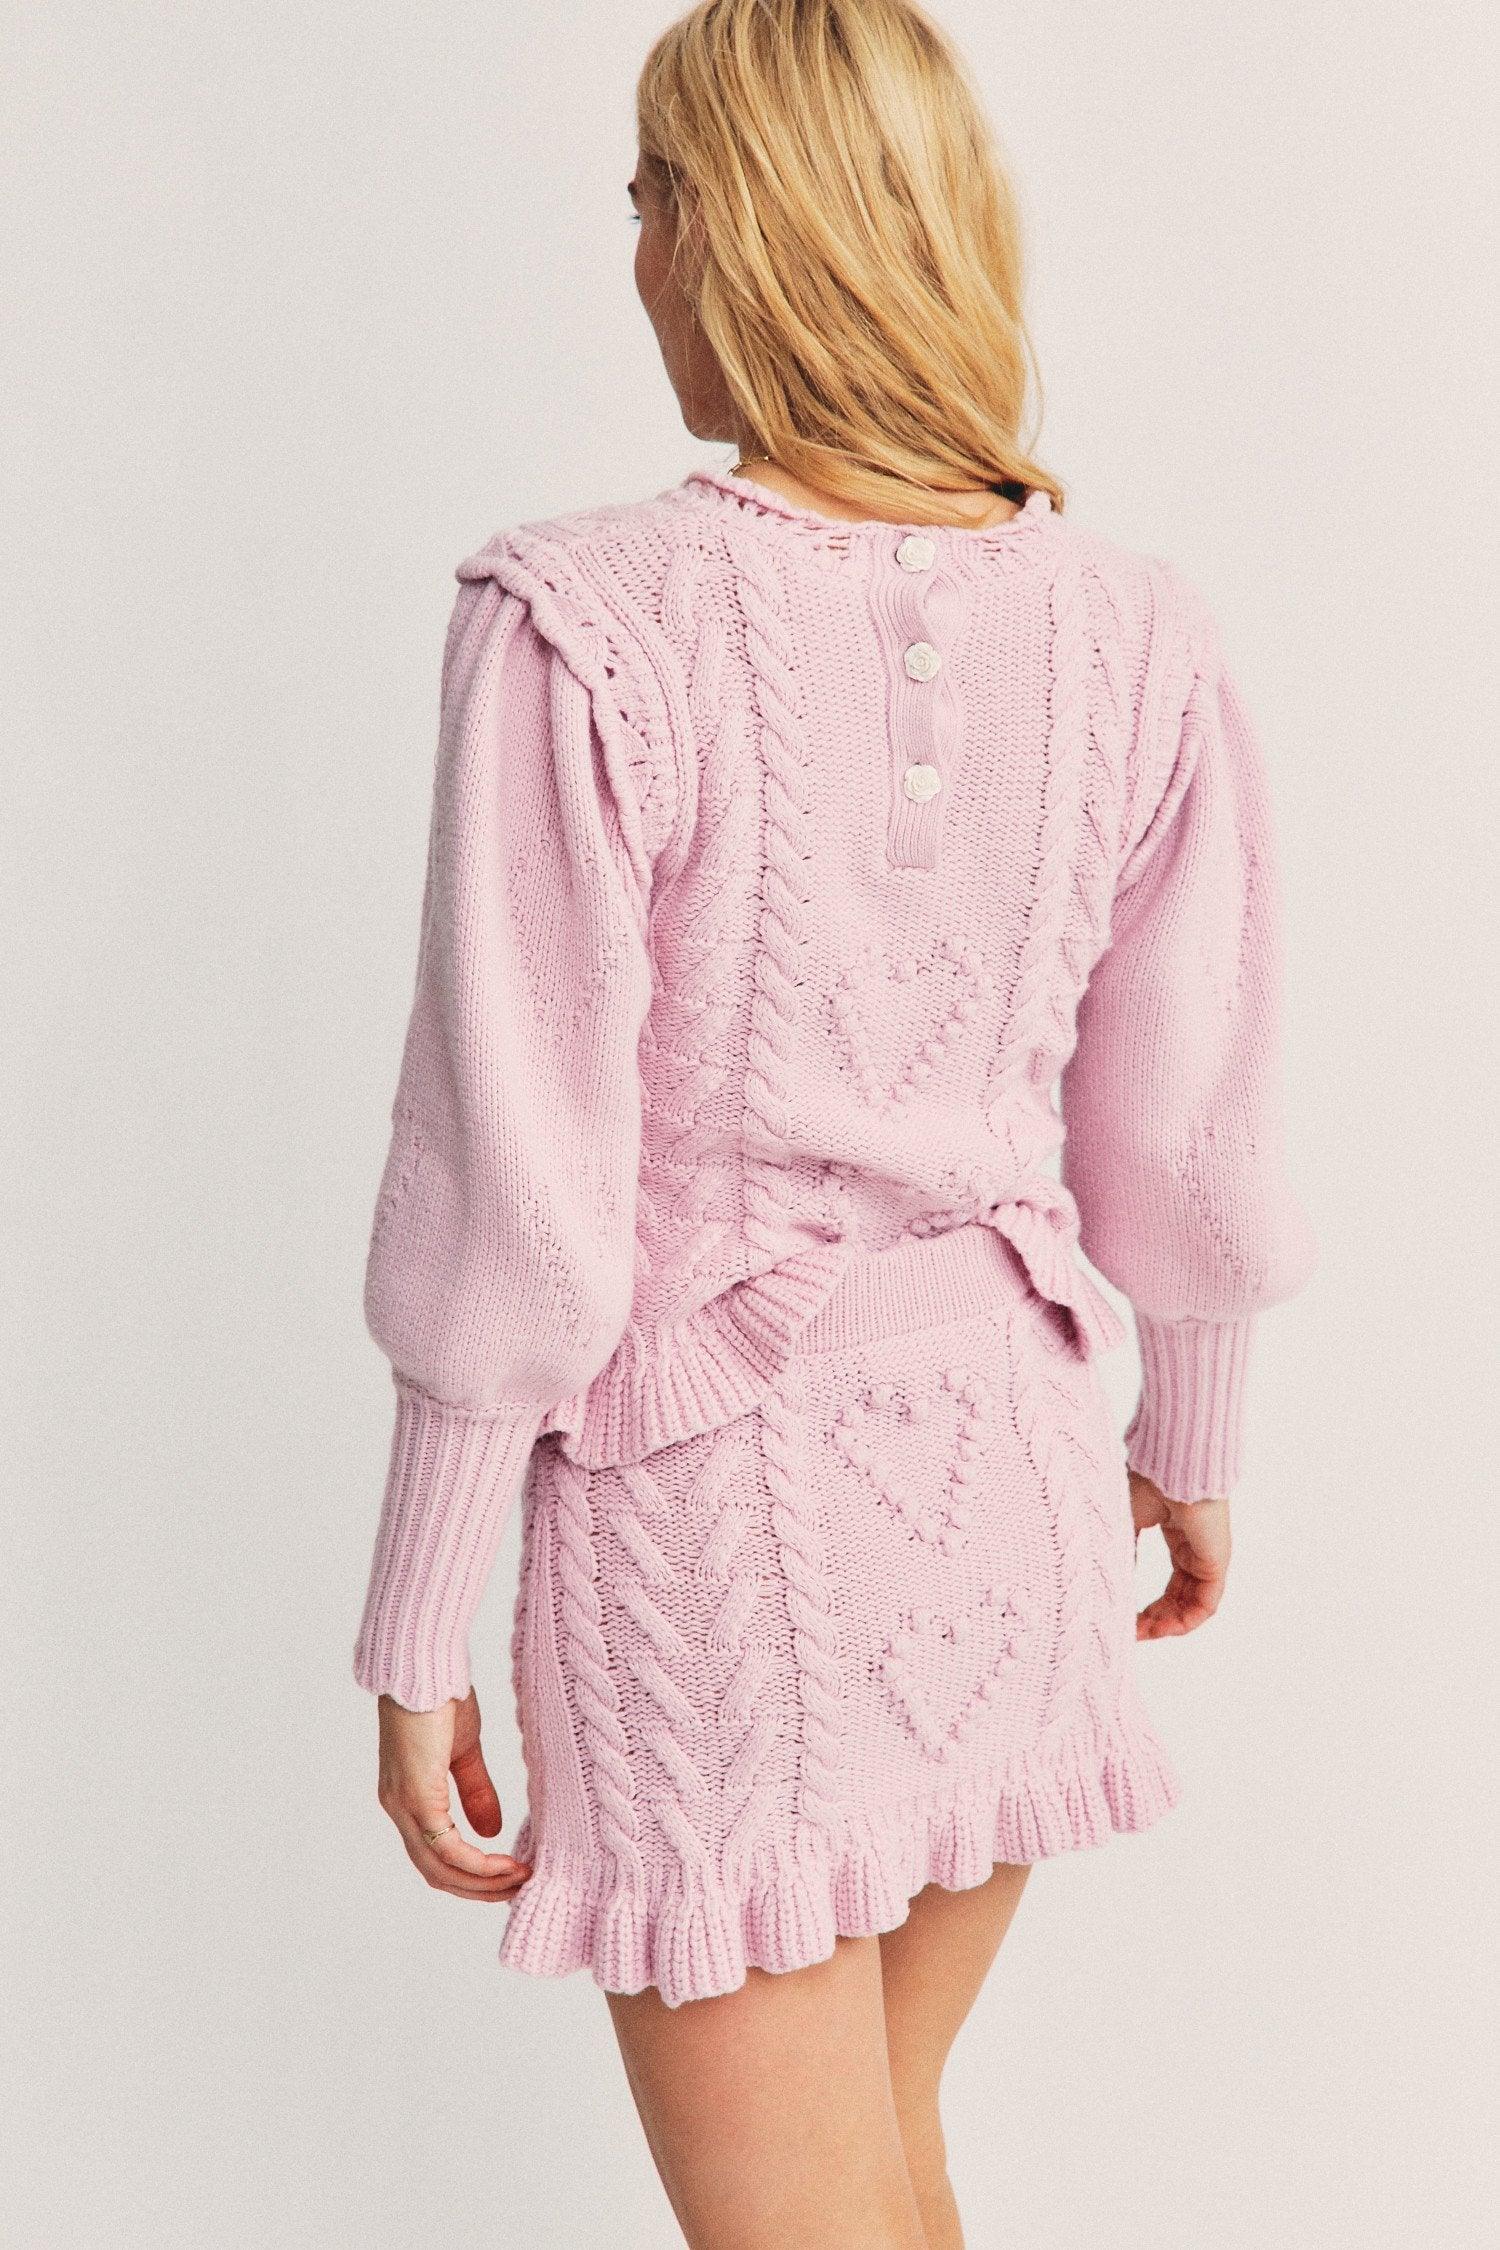 LoveShackFancy - Loveshackfancy Brendana Knit Mini Skirt in Pink - OutDazl